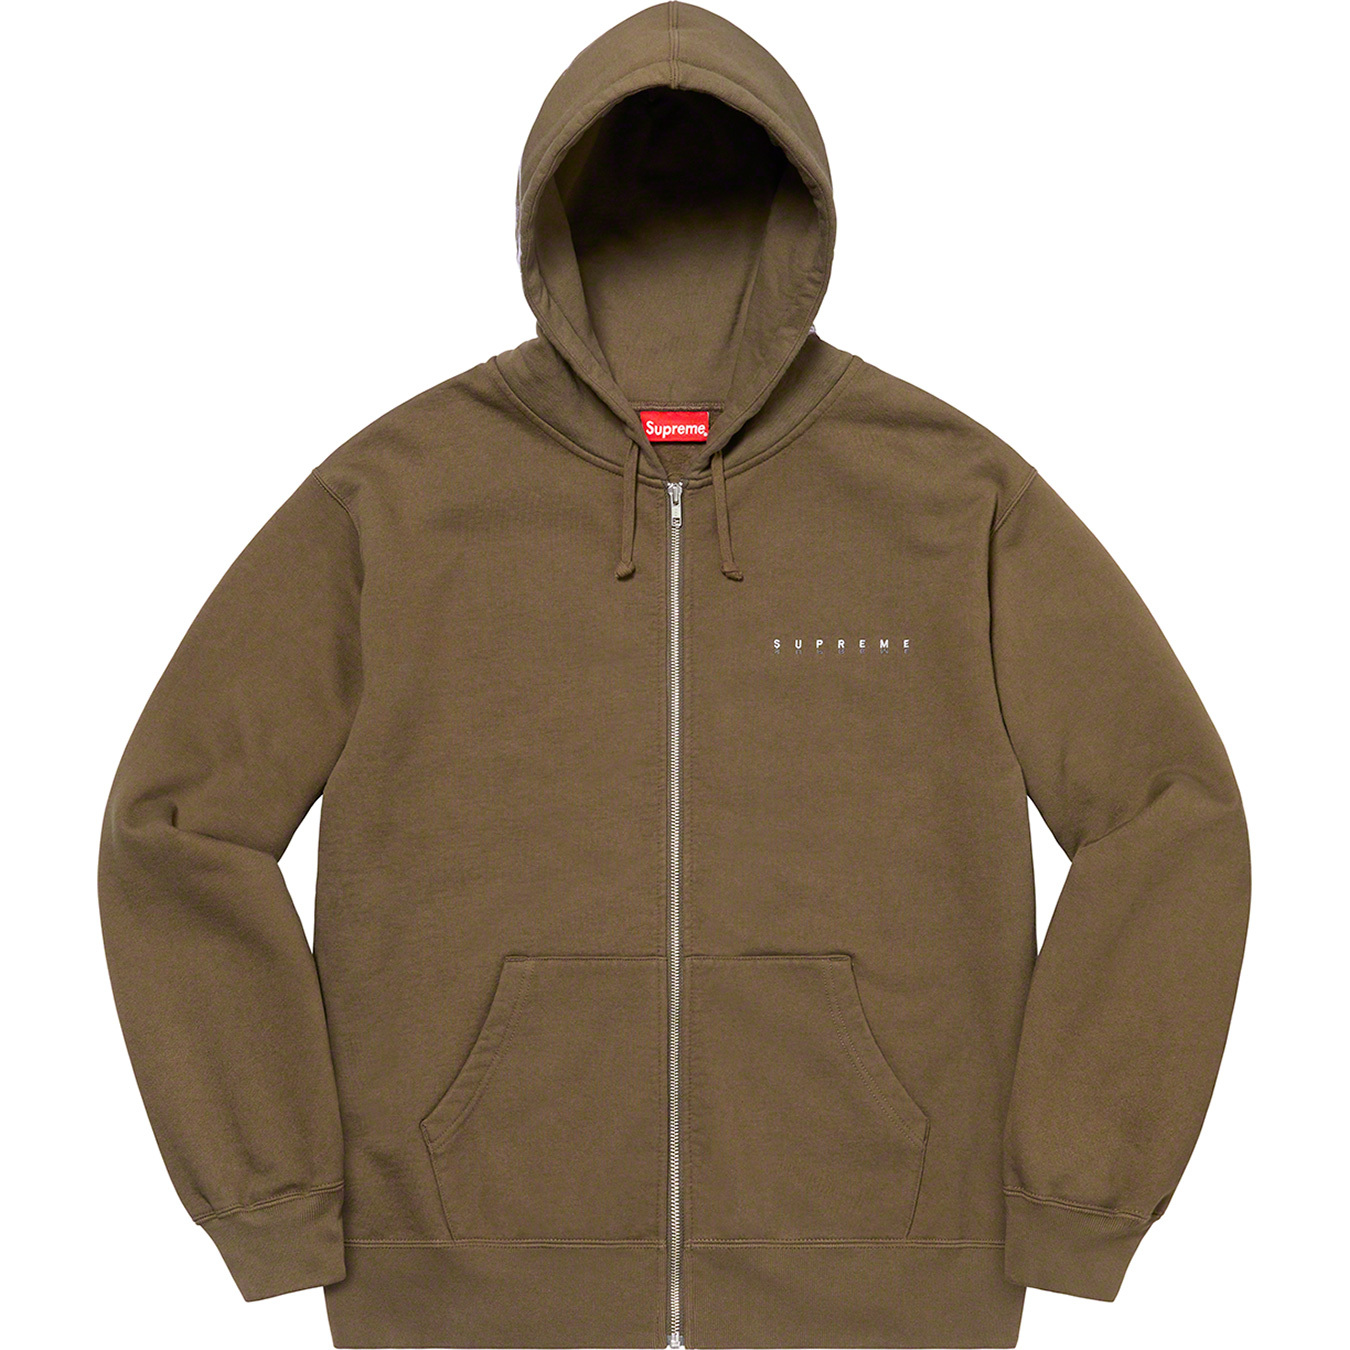 Globe Zip Up Hooded Sweatshirt | Supreme 20fw